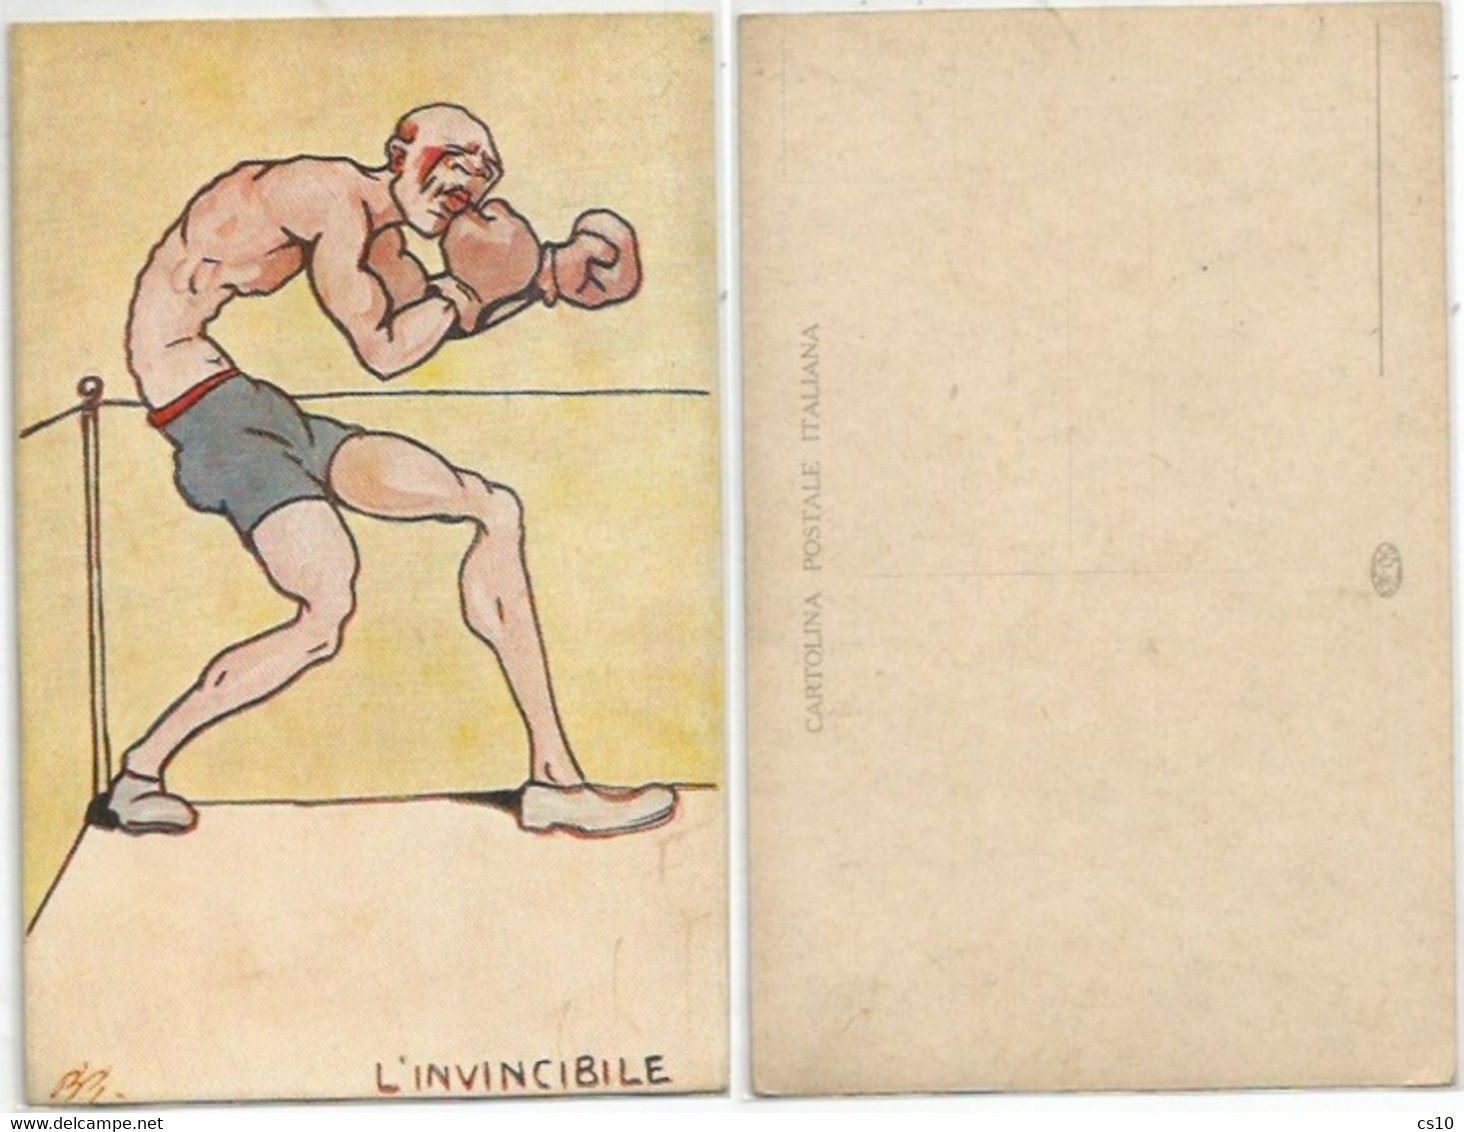 Boxing - Boxe Pugilato L'Invincibile Artist signed color Pcard Made Italy  - Unused - perfect condition